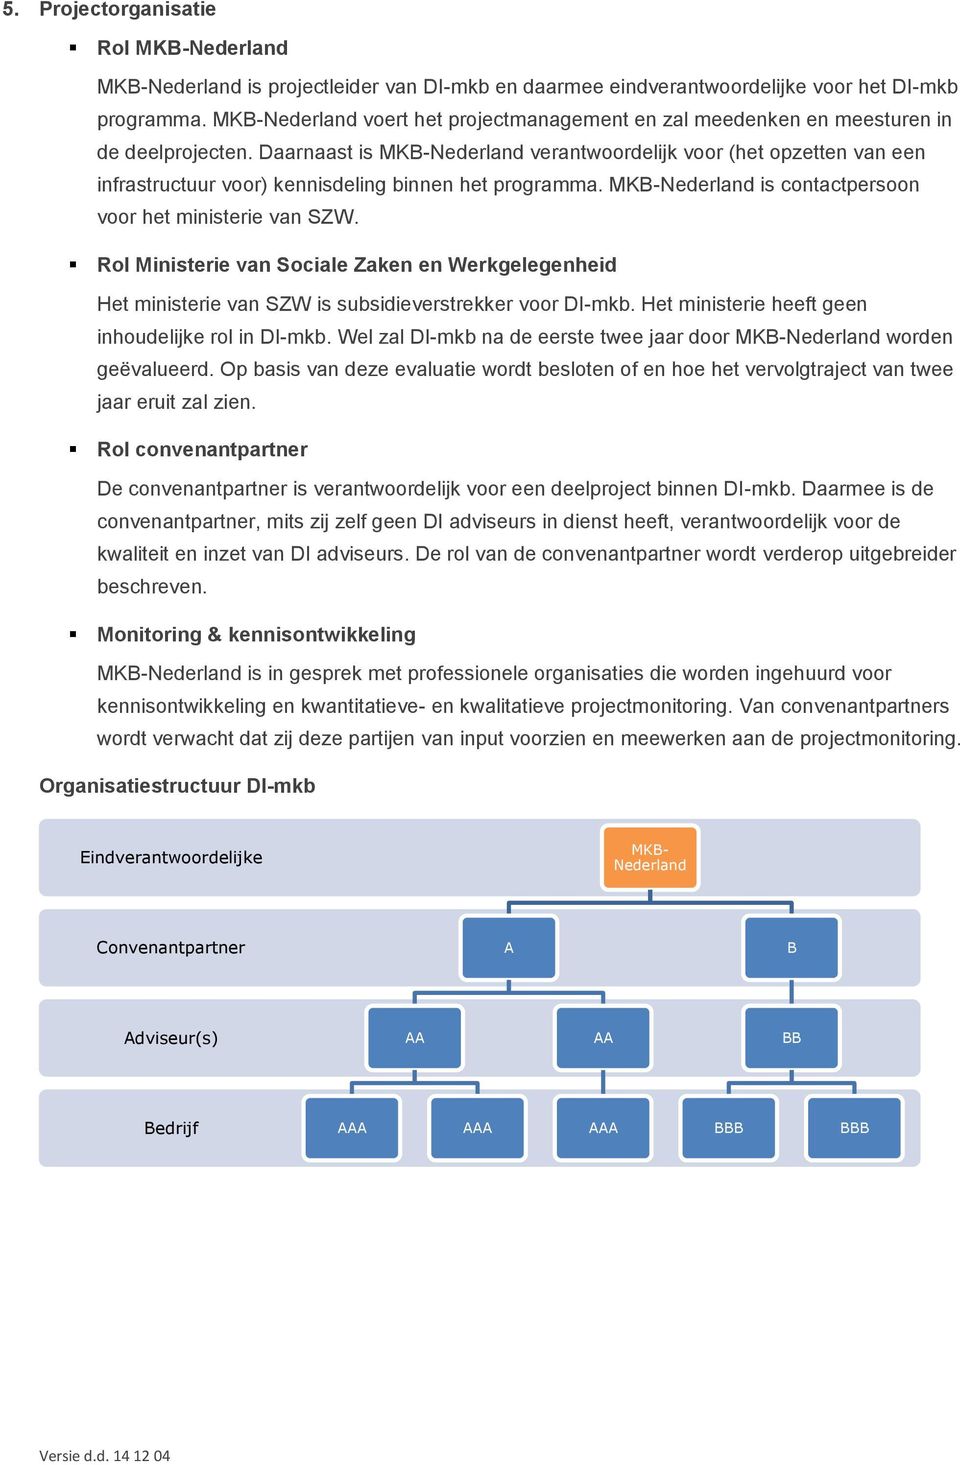 Daarnaast is MKB-Nederland verantwoordelijk voor (het opzetten van een infrastructuur voor) kennisdeling binnen het programma. MKB-Nederland is contactpersoon voor het ministerie van SZW.